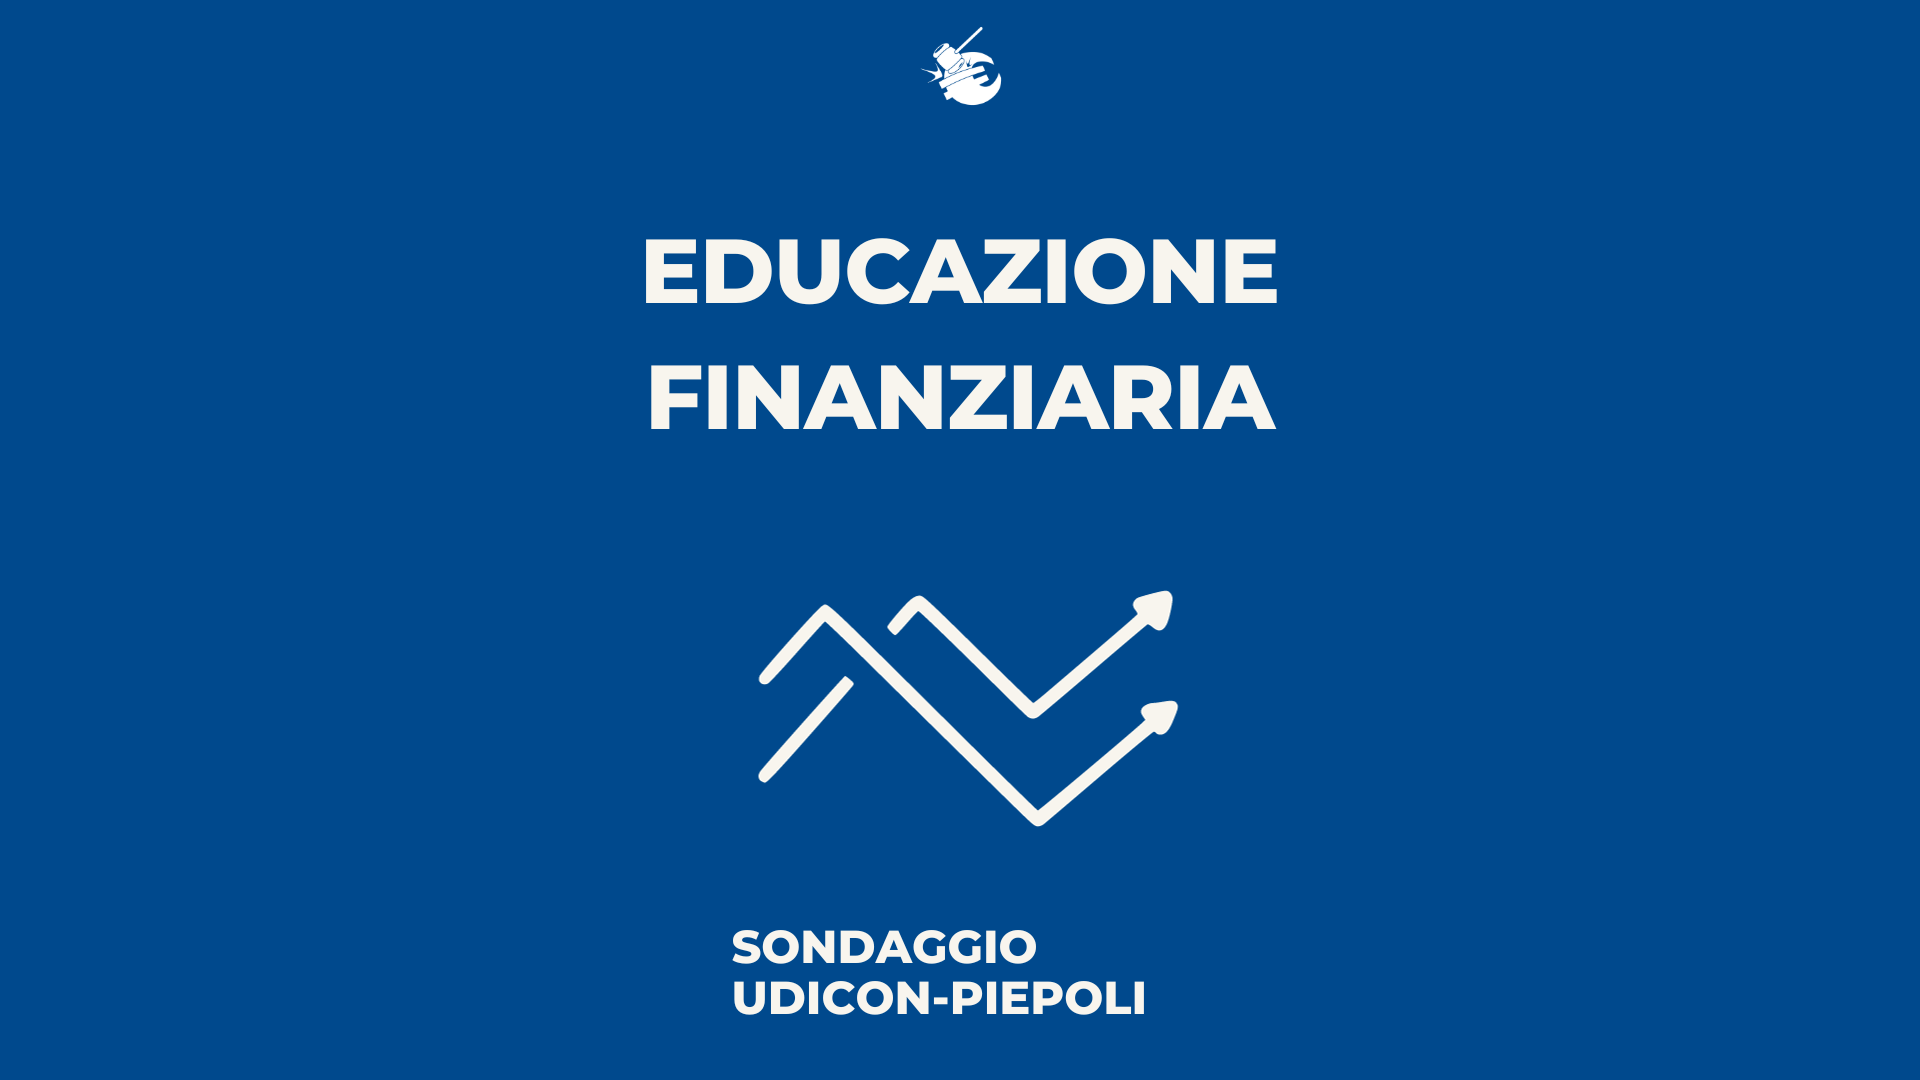 Educazione Finanziaria: Udicon, solo 1 italiano su 3 adeguatamente informato 83% favorevole a inserimento nei programmi scolastici